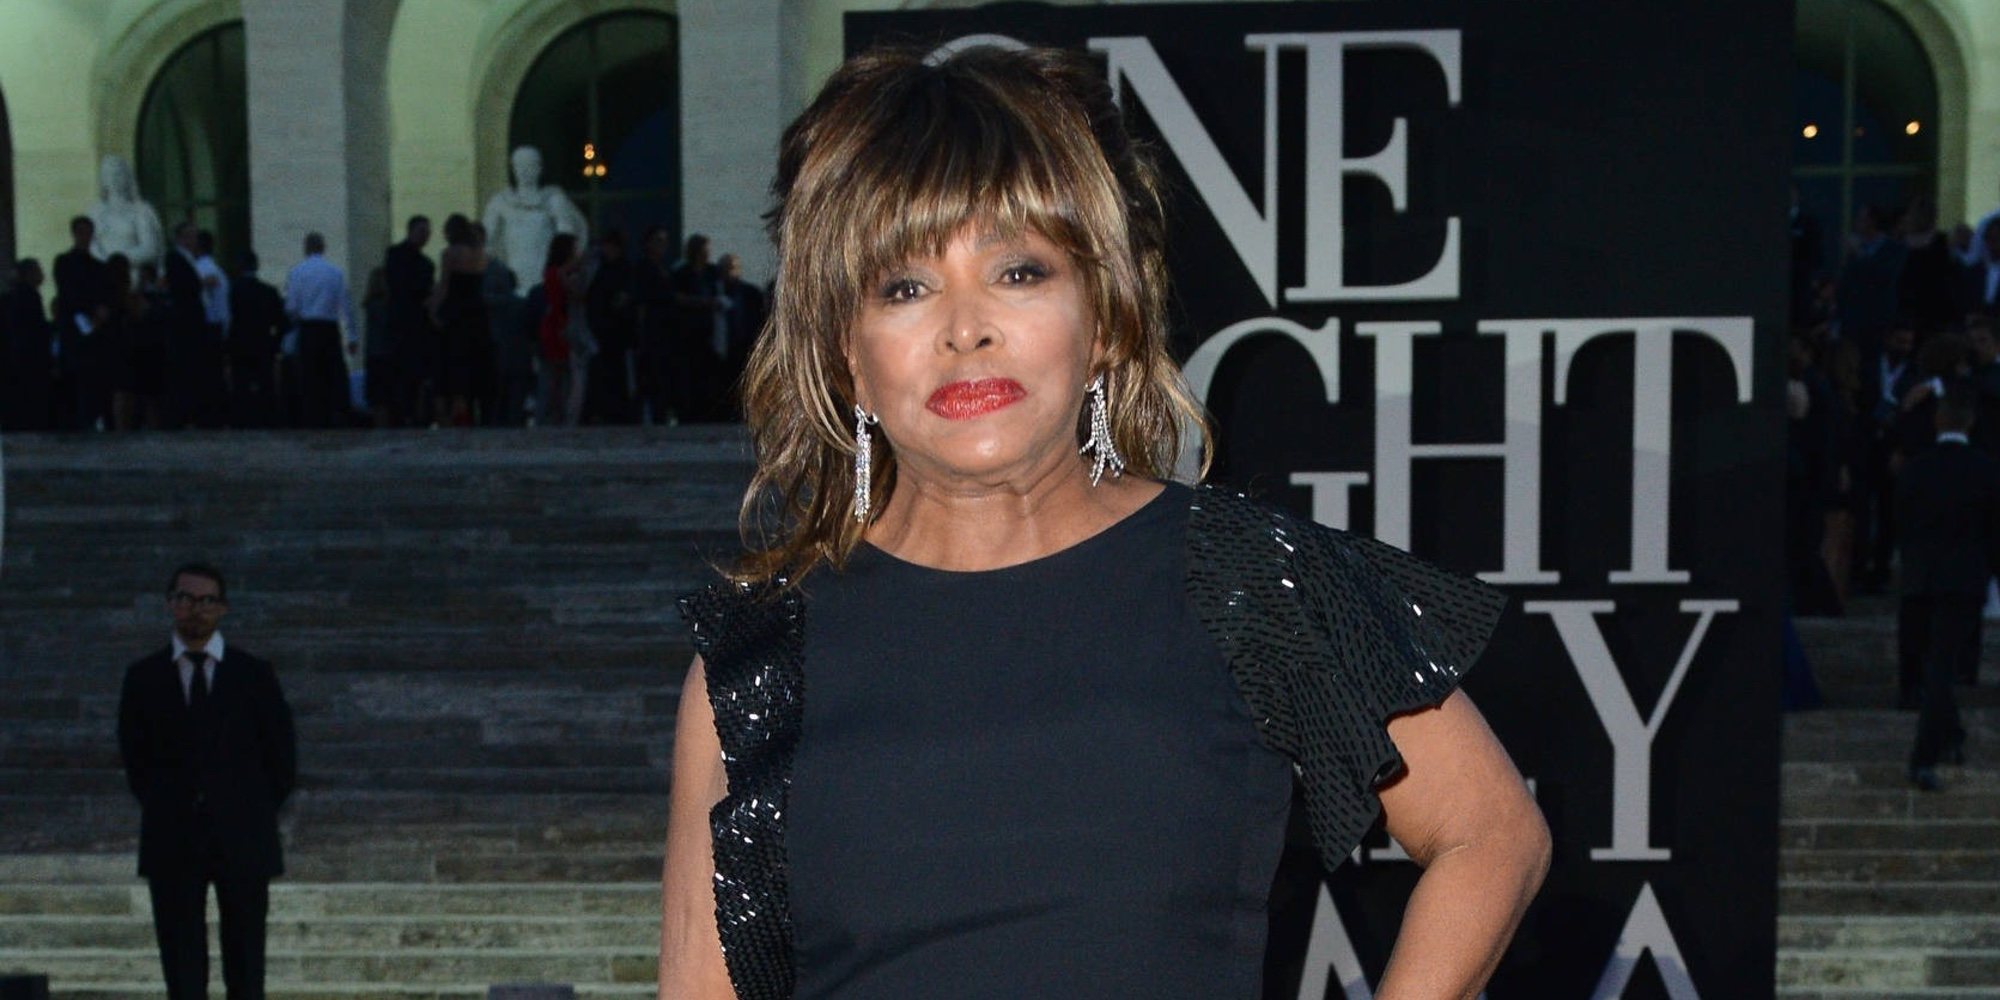 Tina Turner reconoce haber perdonado a su exmarido, quien la maltrató durante muchos años